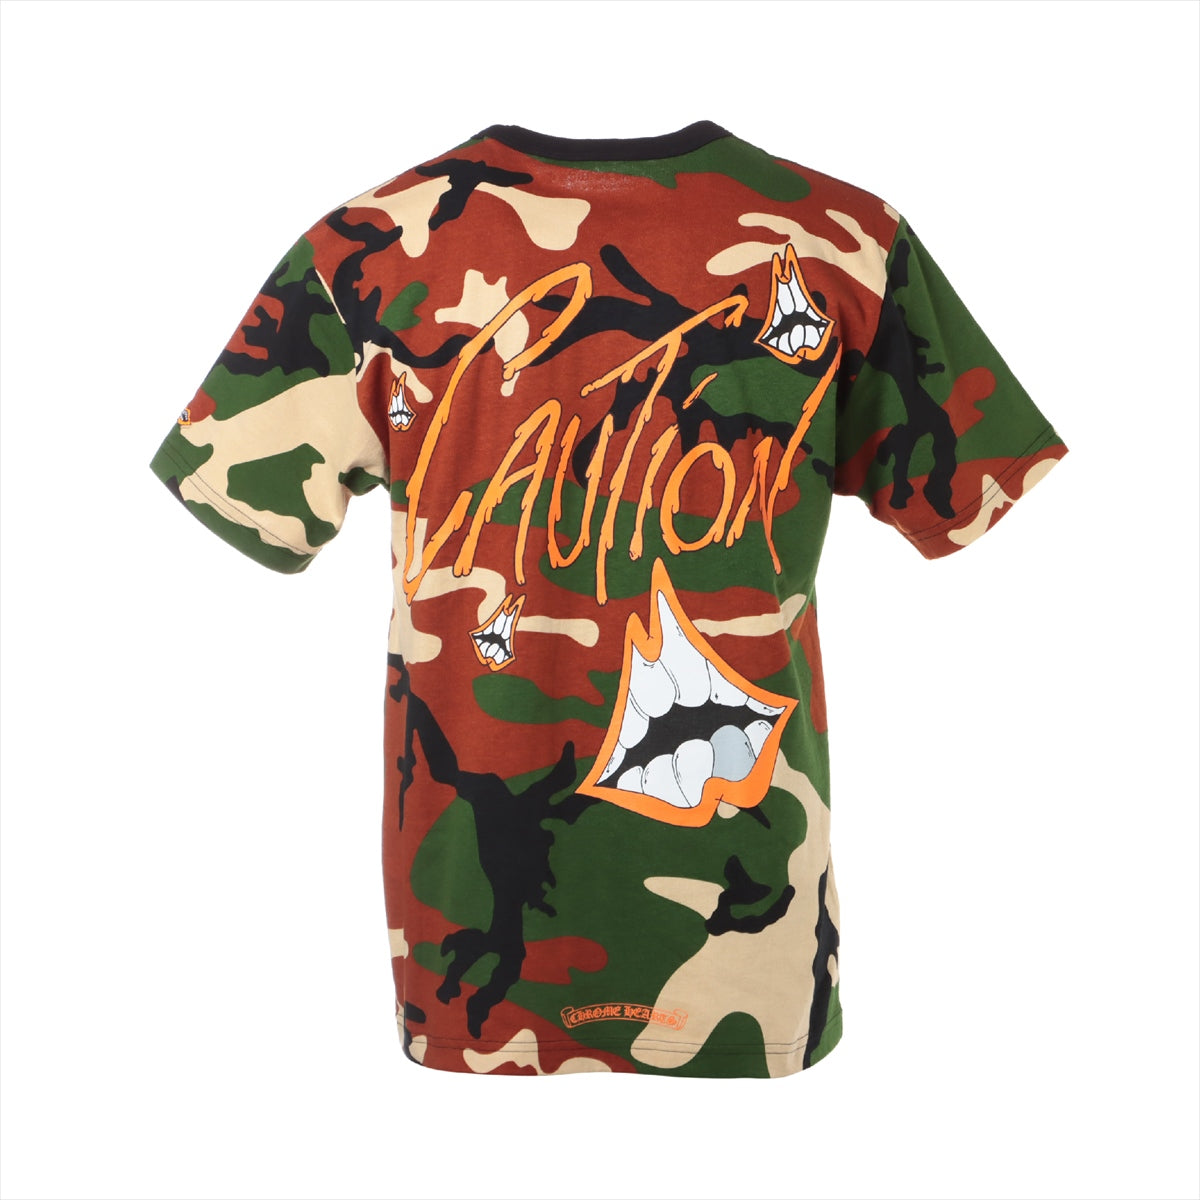 Chrome Hearts Matty Boy T-shirt Cotton size L Camouflage PPO CAUTION